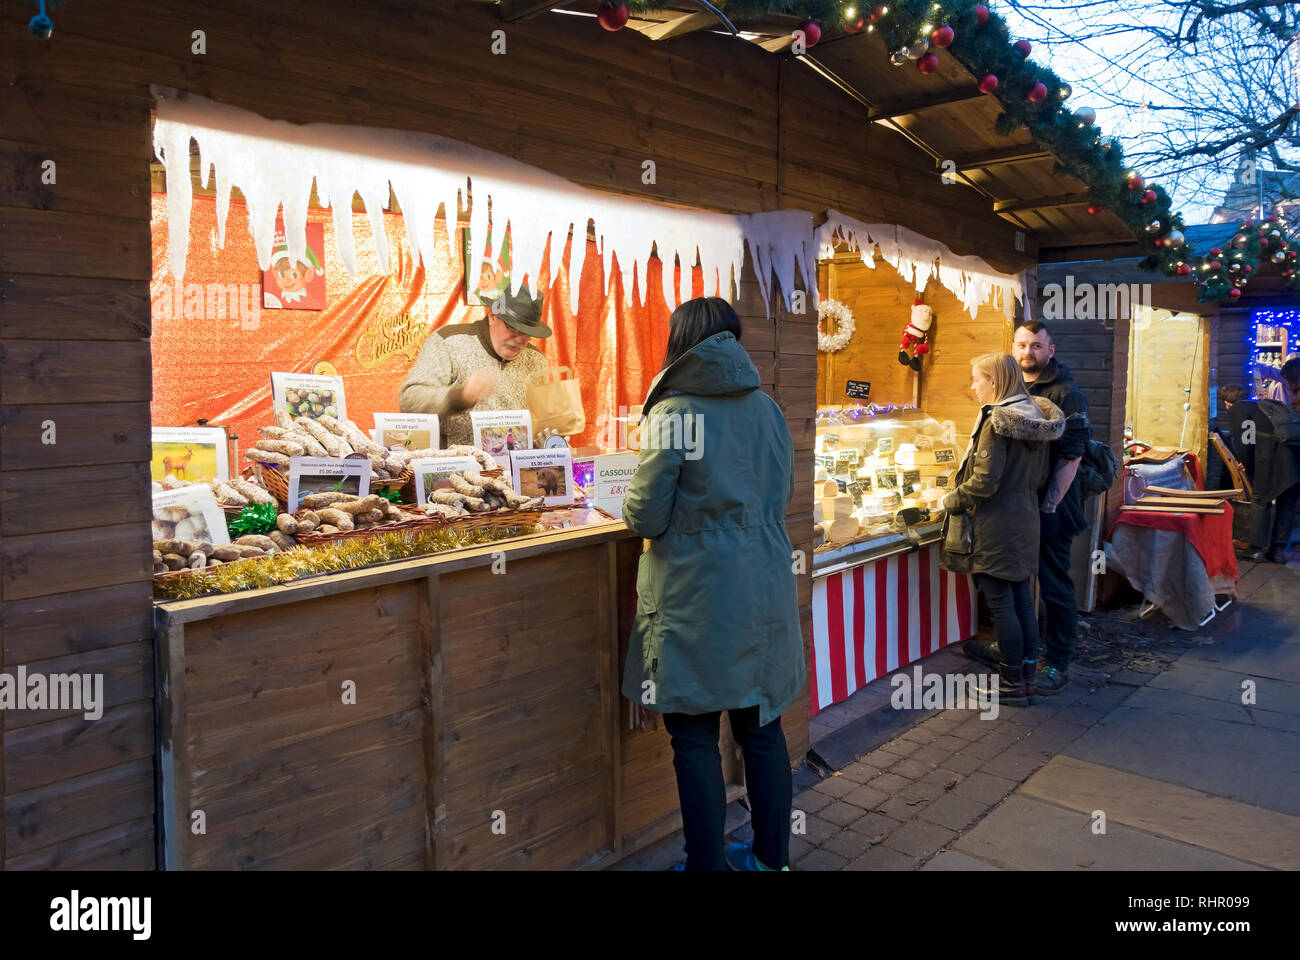 Les gens qui font du shopping chez les commerçants français stallent sur le marché de Noël de St Nicholas Fayre York North Yorkshire England Royaume-Uni GB Grande-Bretagne Banque D'Images